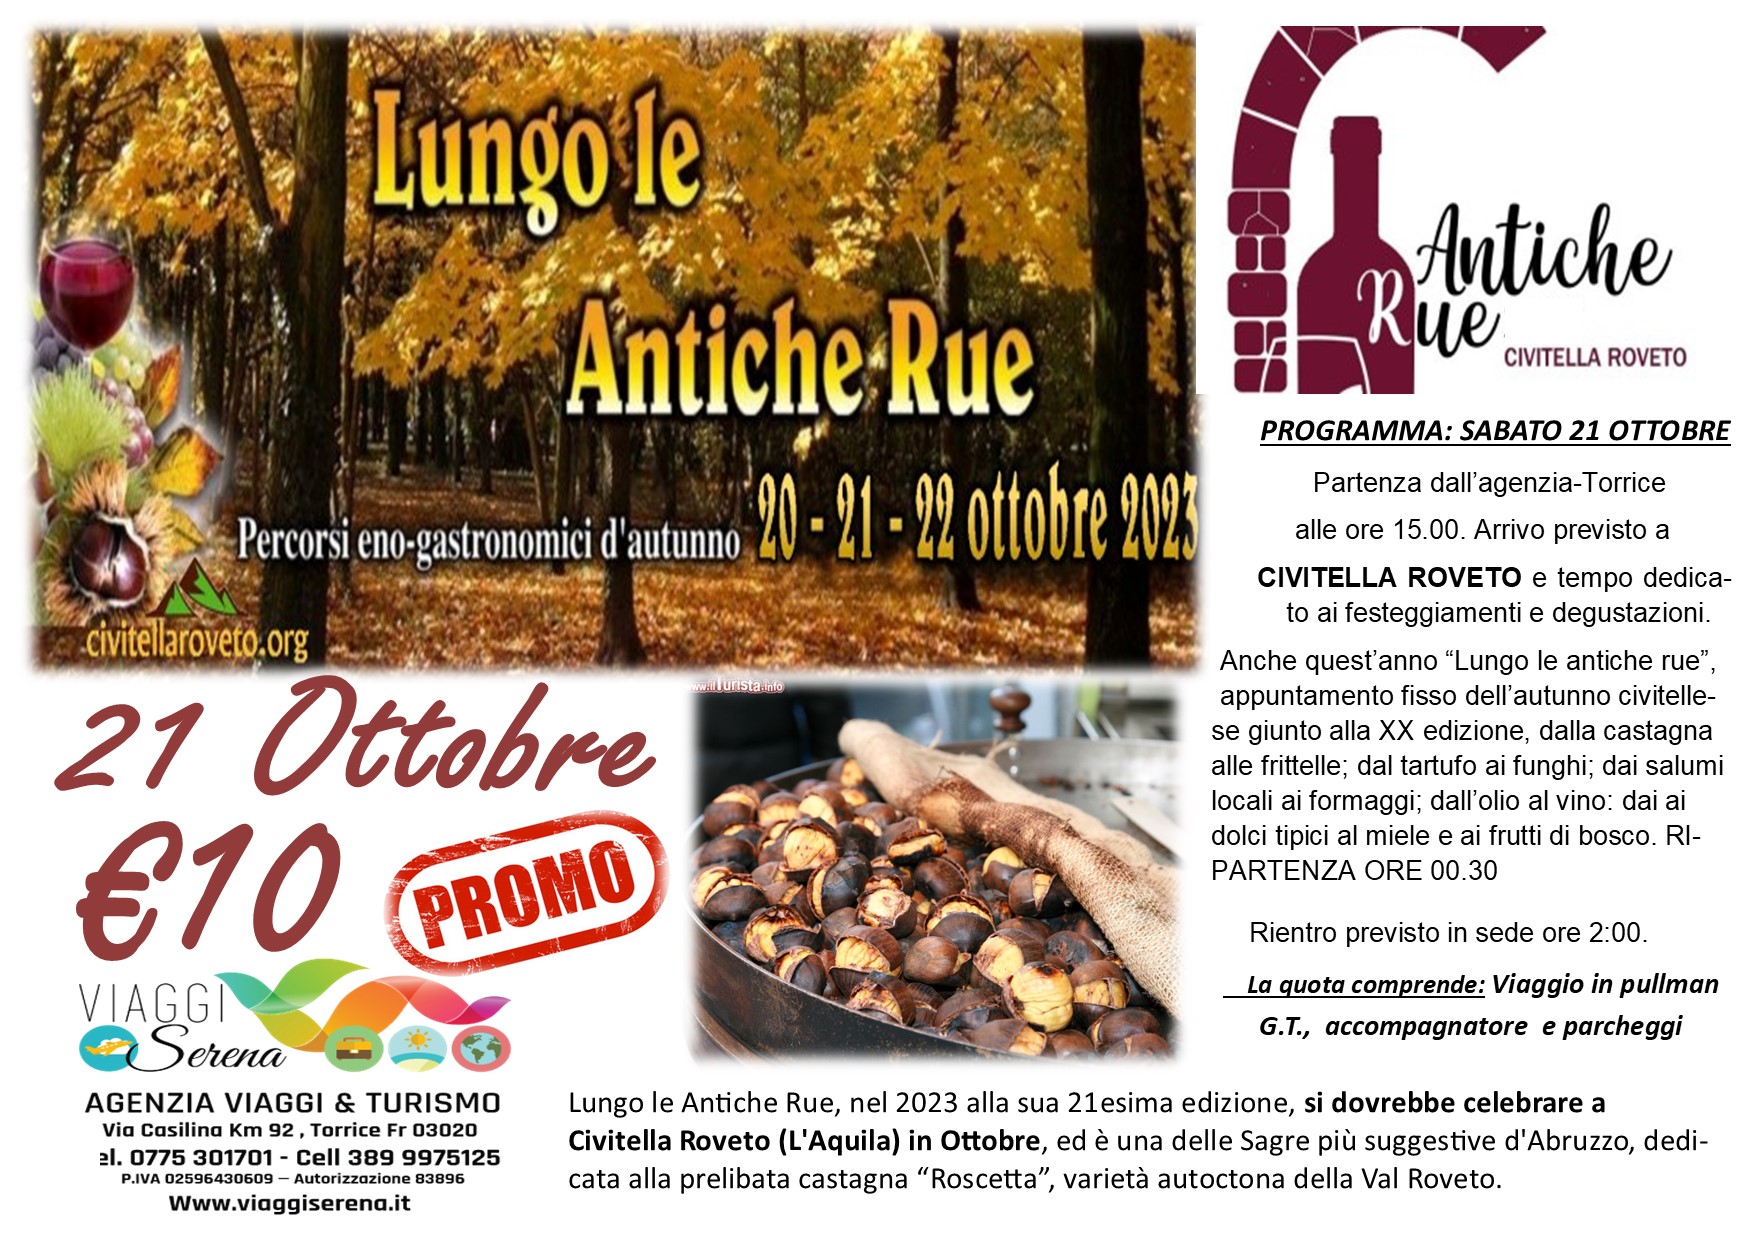 Viaggi di gruppo: PROMO Civitella Roveto “Le Antiche Rue” 21 Ottobre € 10,00